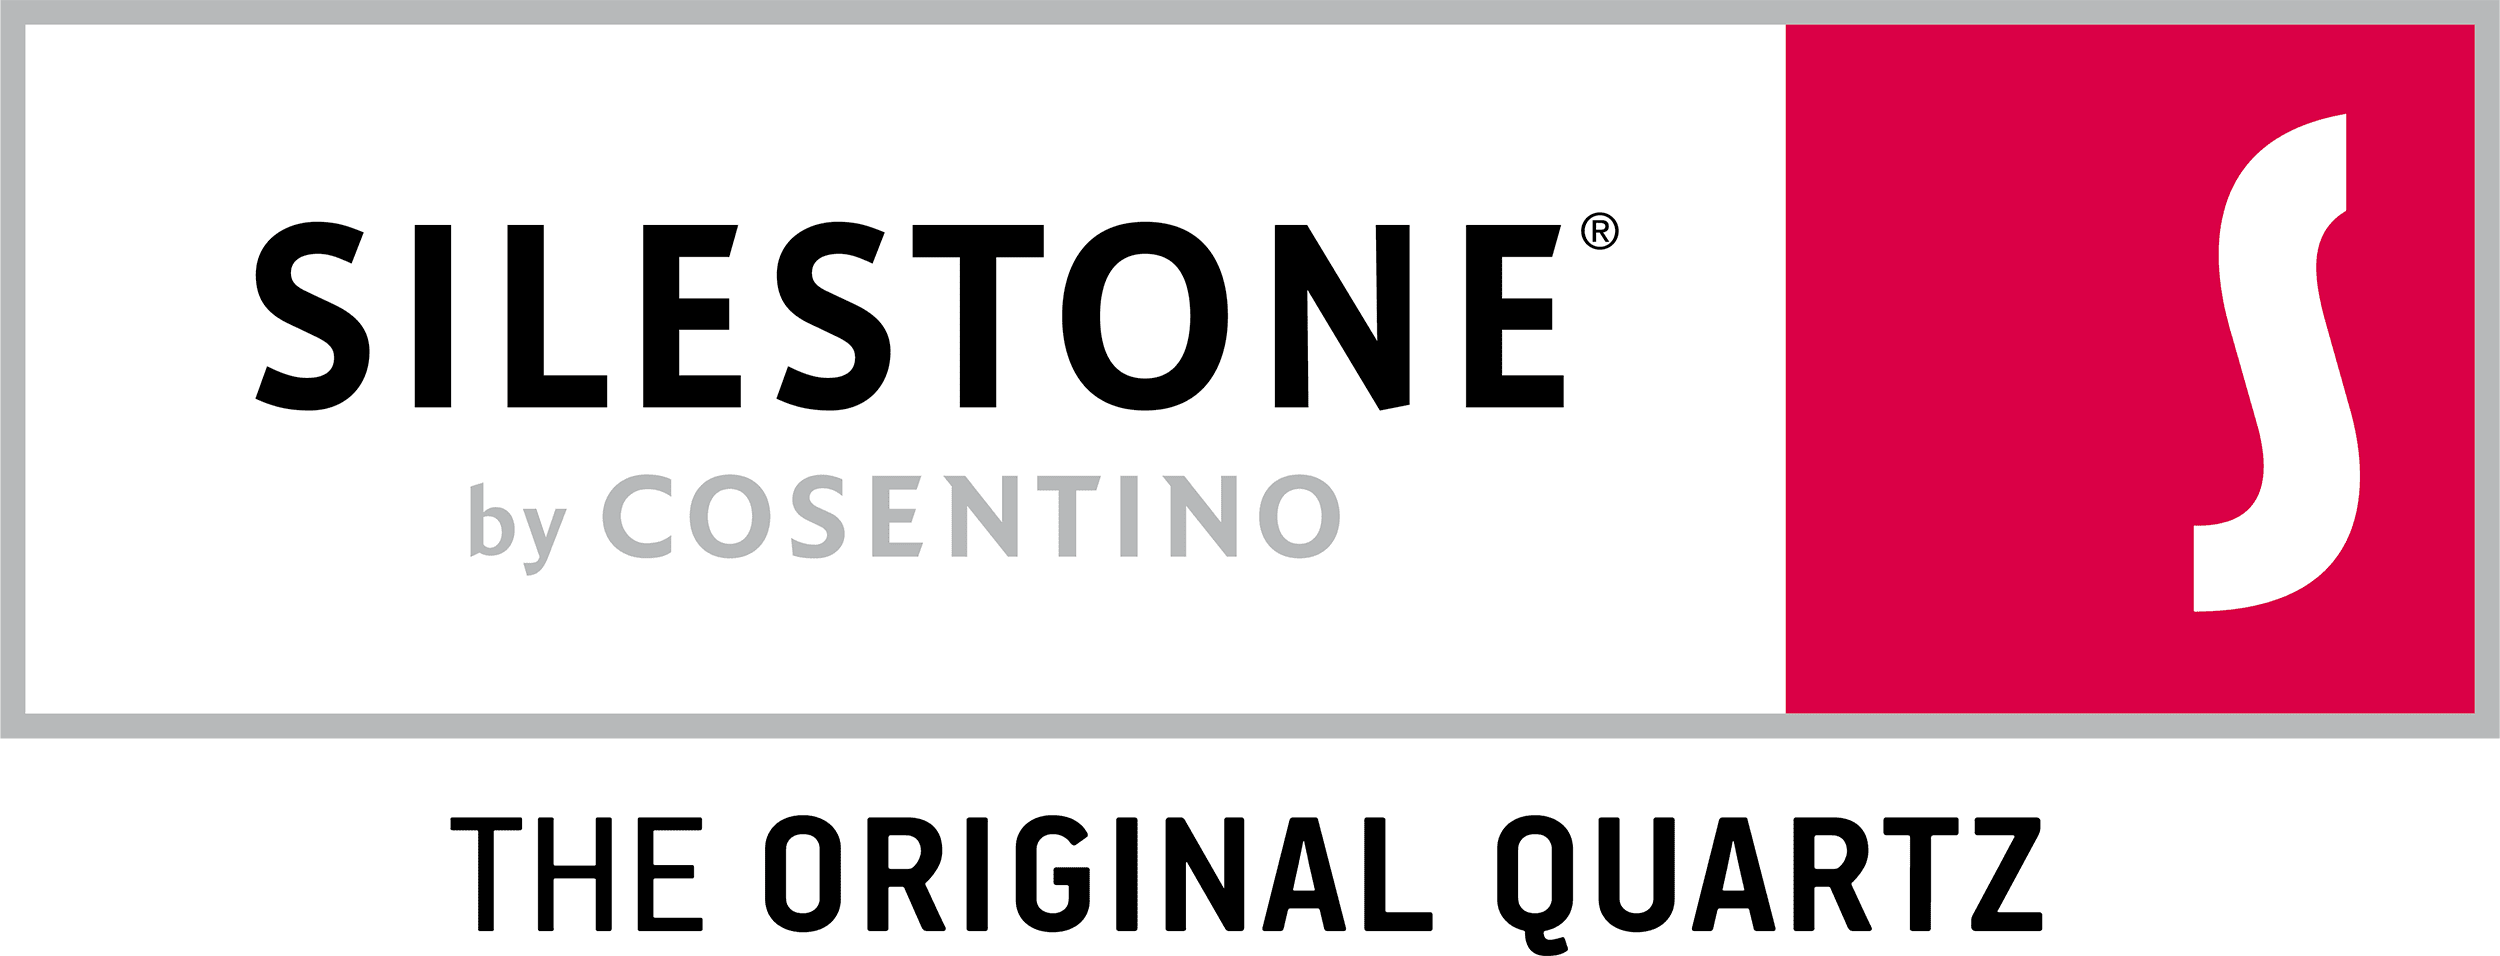 alt tagSilestone logo